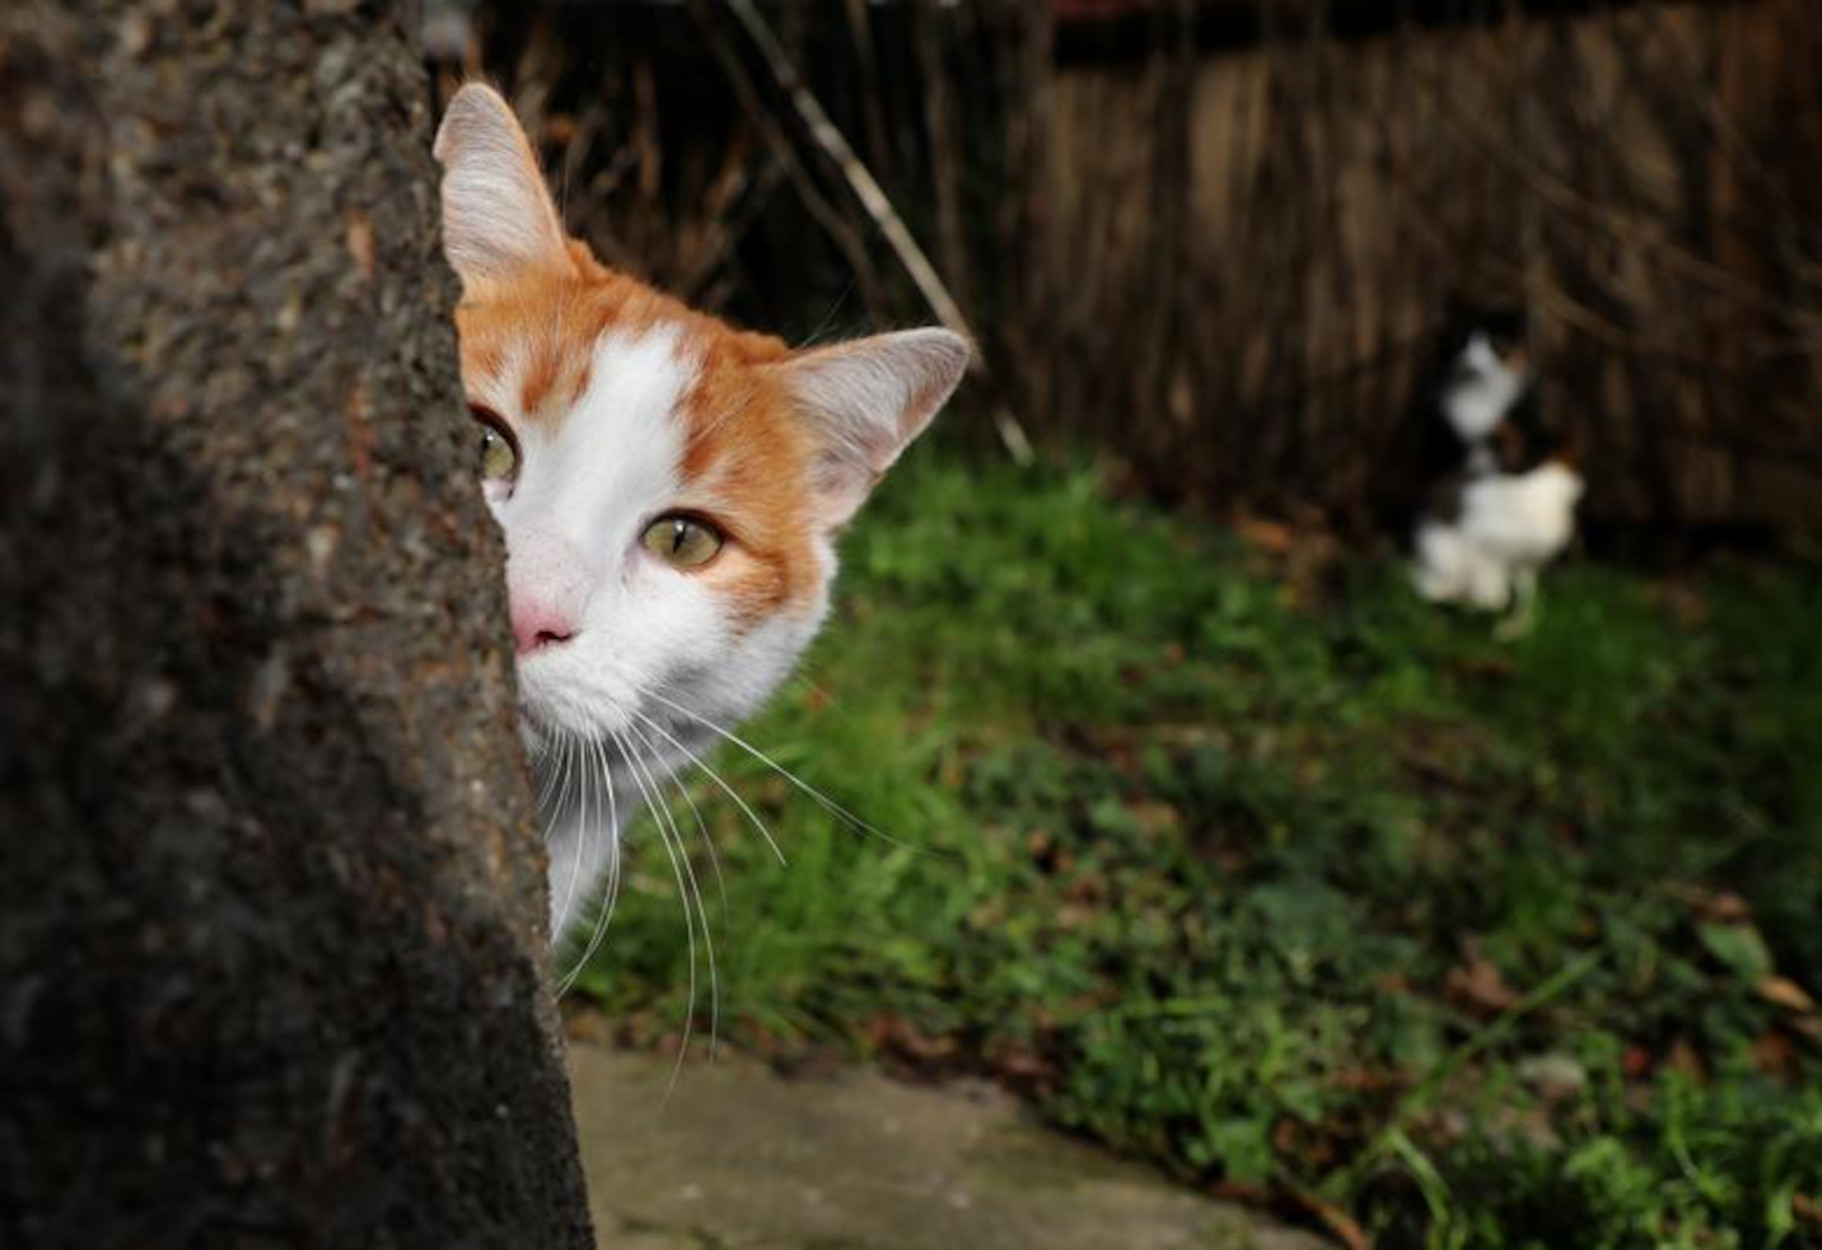 Ναύπακτος: Εκδίκηση με μια σφαίρα στο στήθος για την εκτέλεση γάτας – Οι εξηγήσεις του δράστη